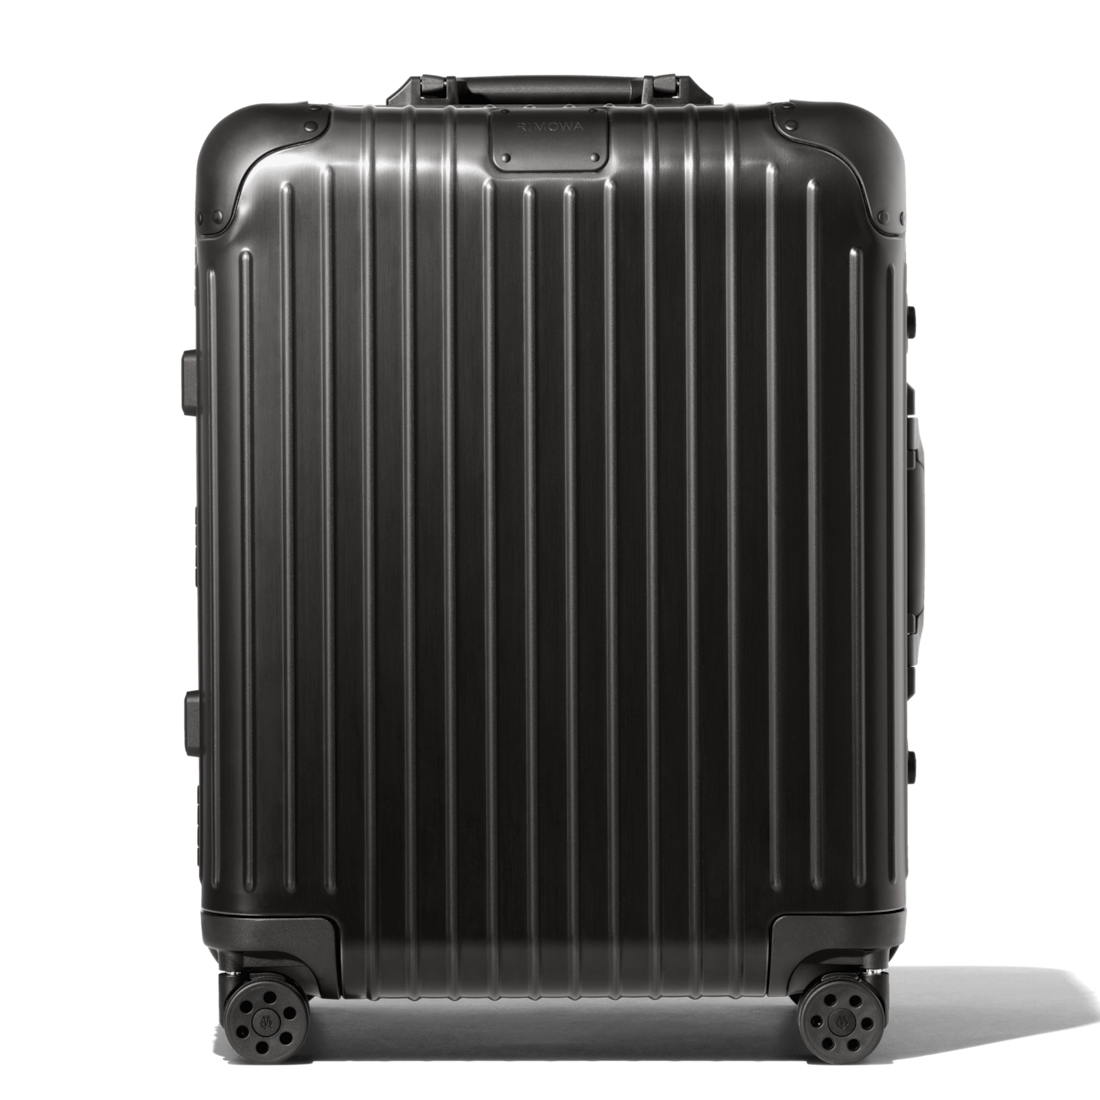 Original Cabin Plus Aluminum Suitcase 